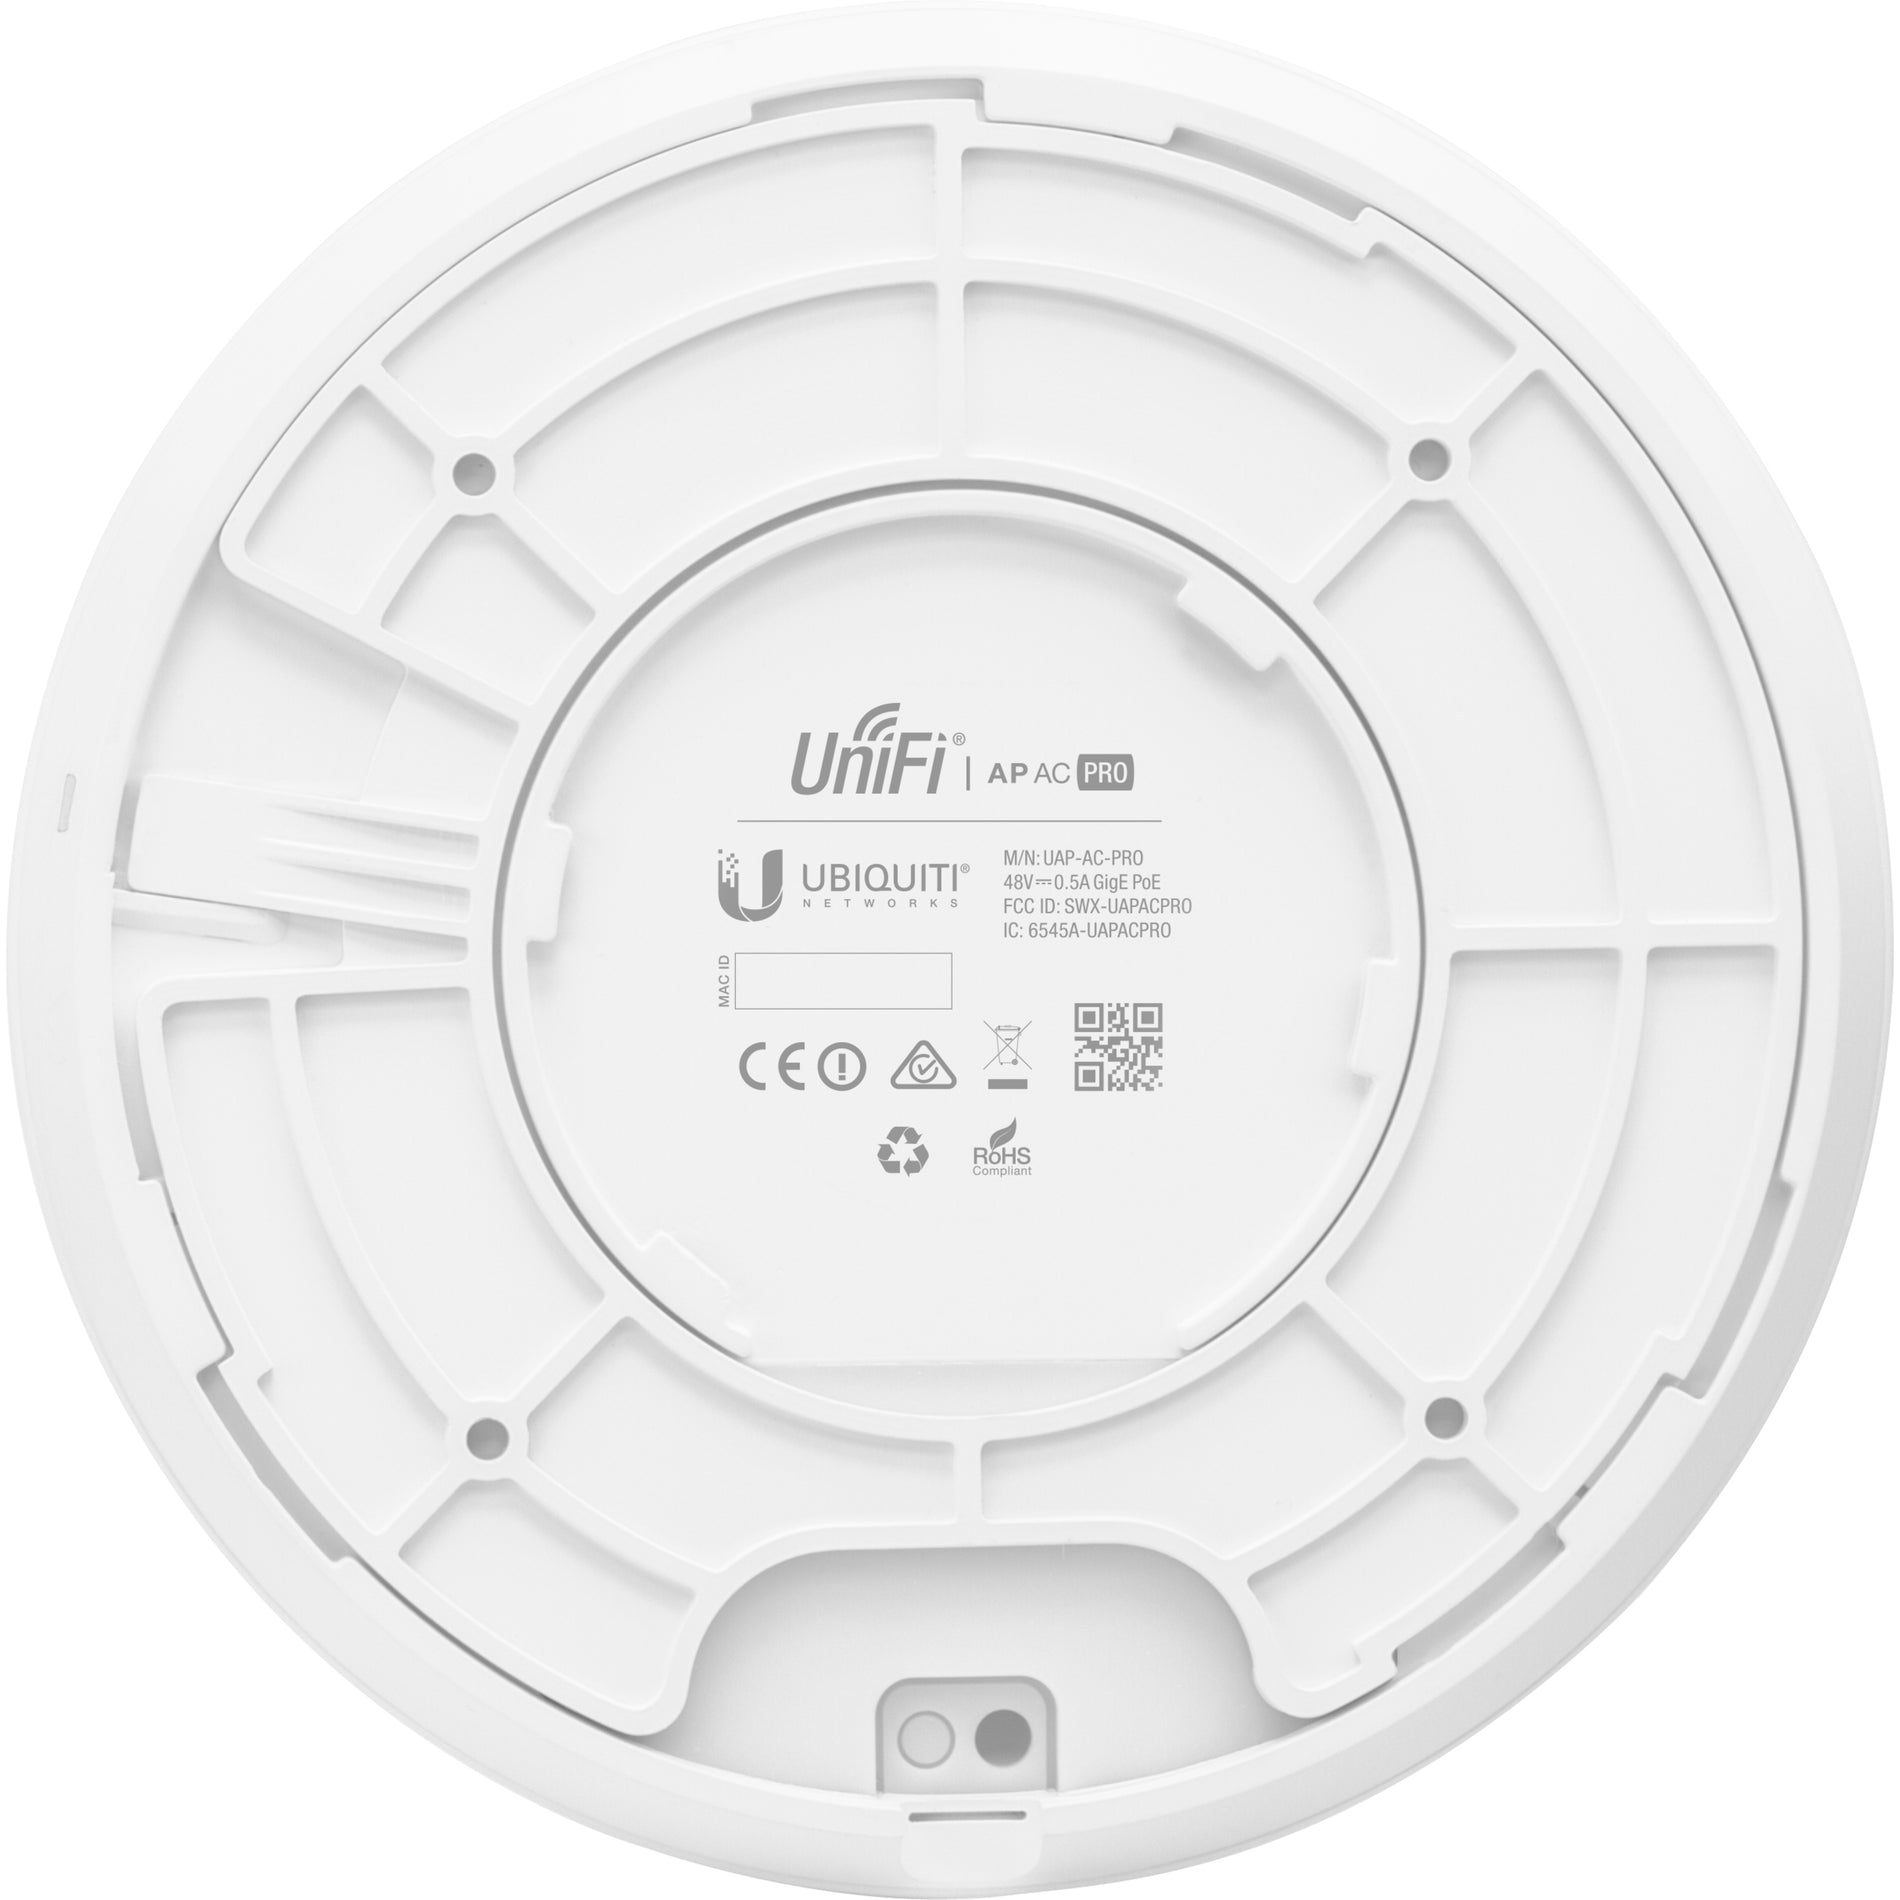 Ubiquiti UAP-AC-PRO UAP-AC-PRO-US UniFi Access Point Enterprise Wi-Fi System Gigabit Ethernet 1.27 Gbit/s